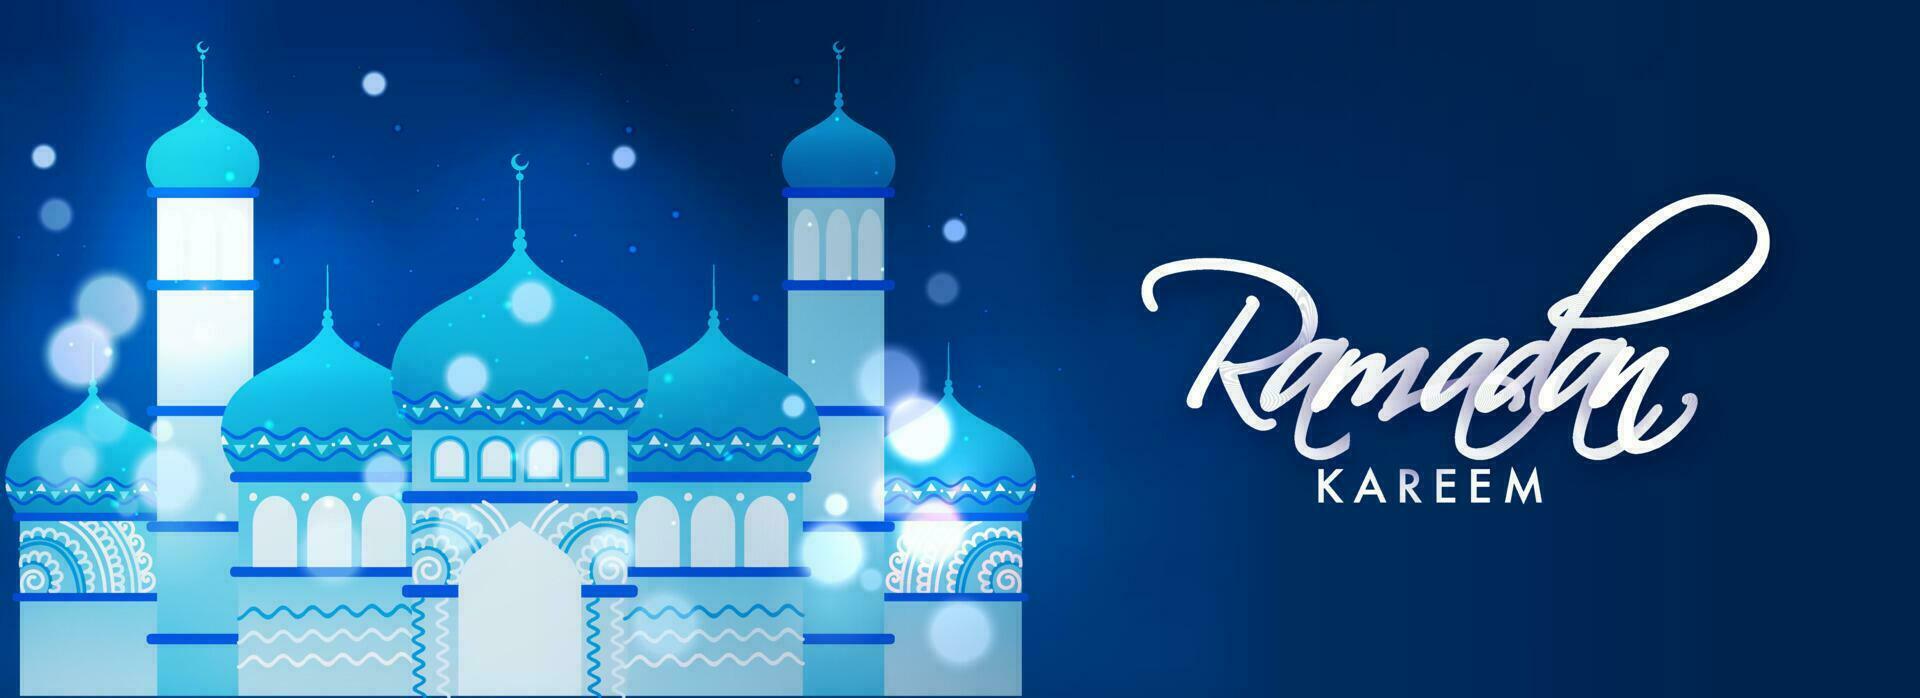 ramadan kareem font med moské illustration och bokeh effekt på blå bakgrund. vektor